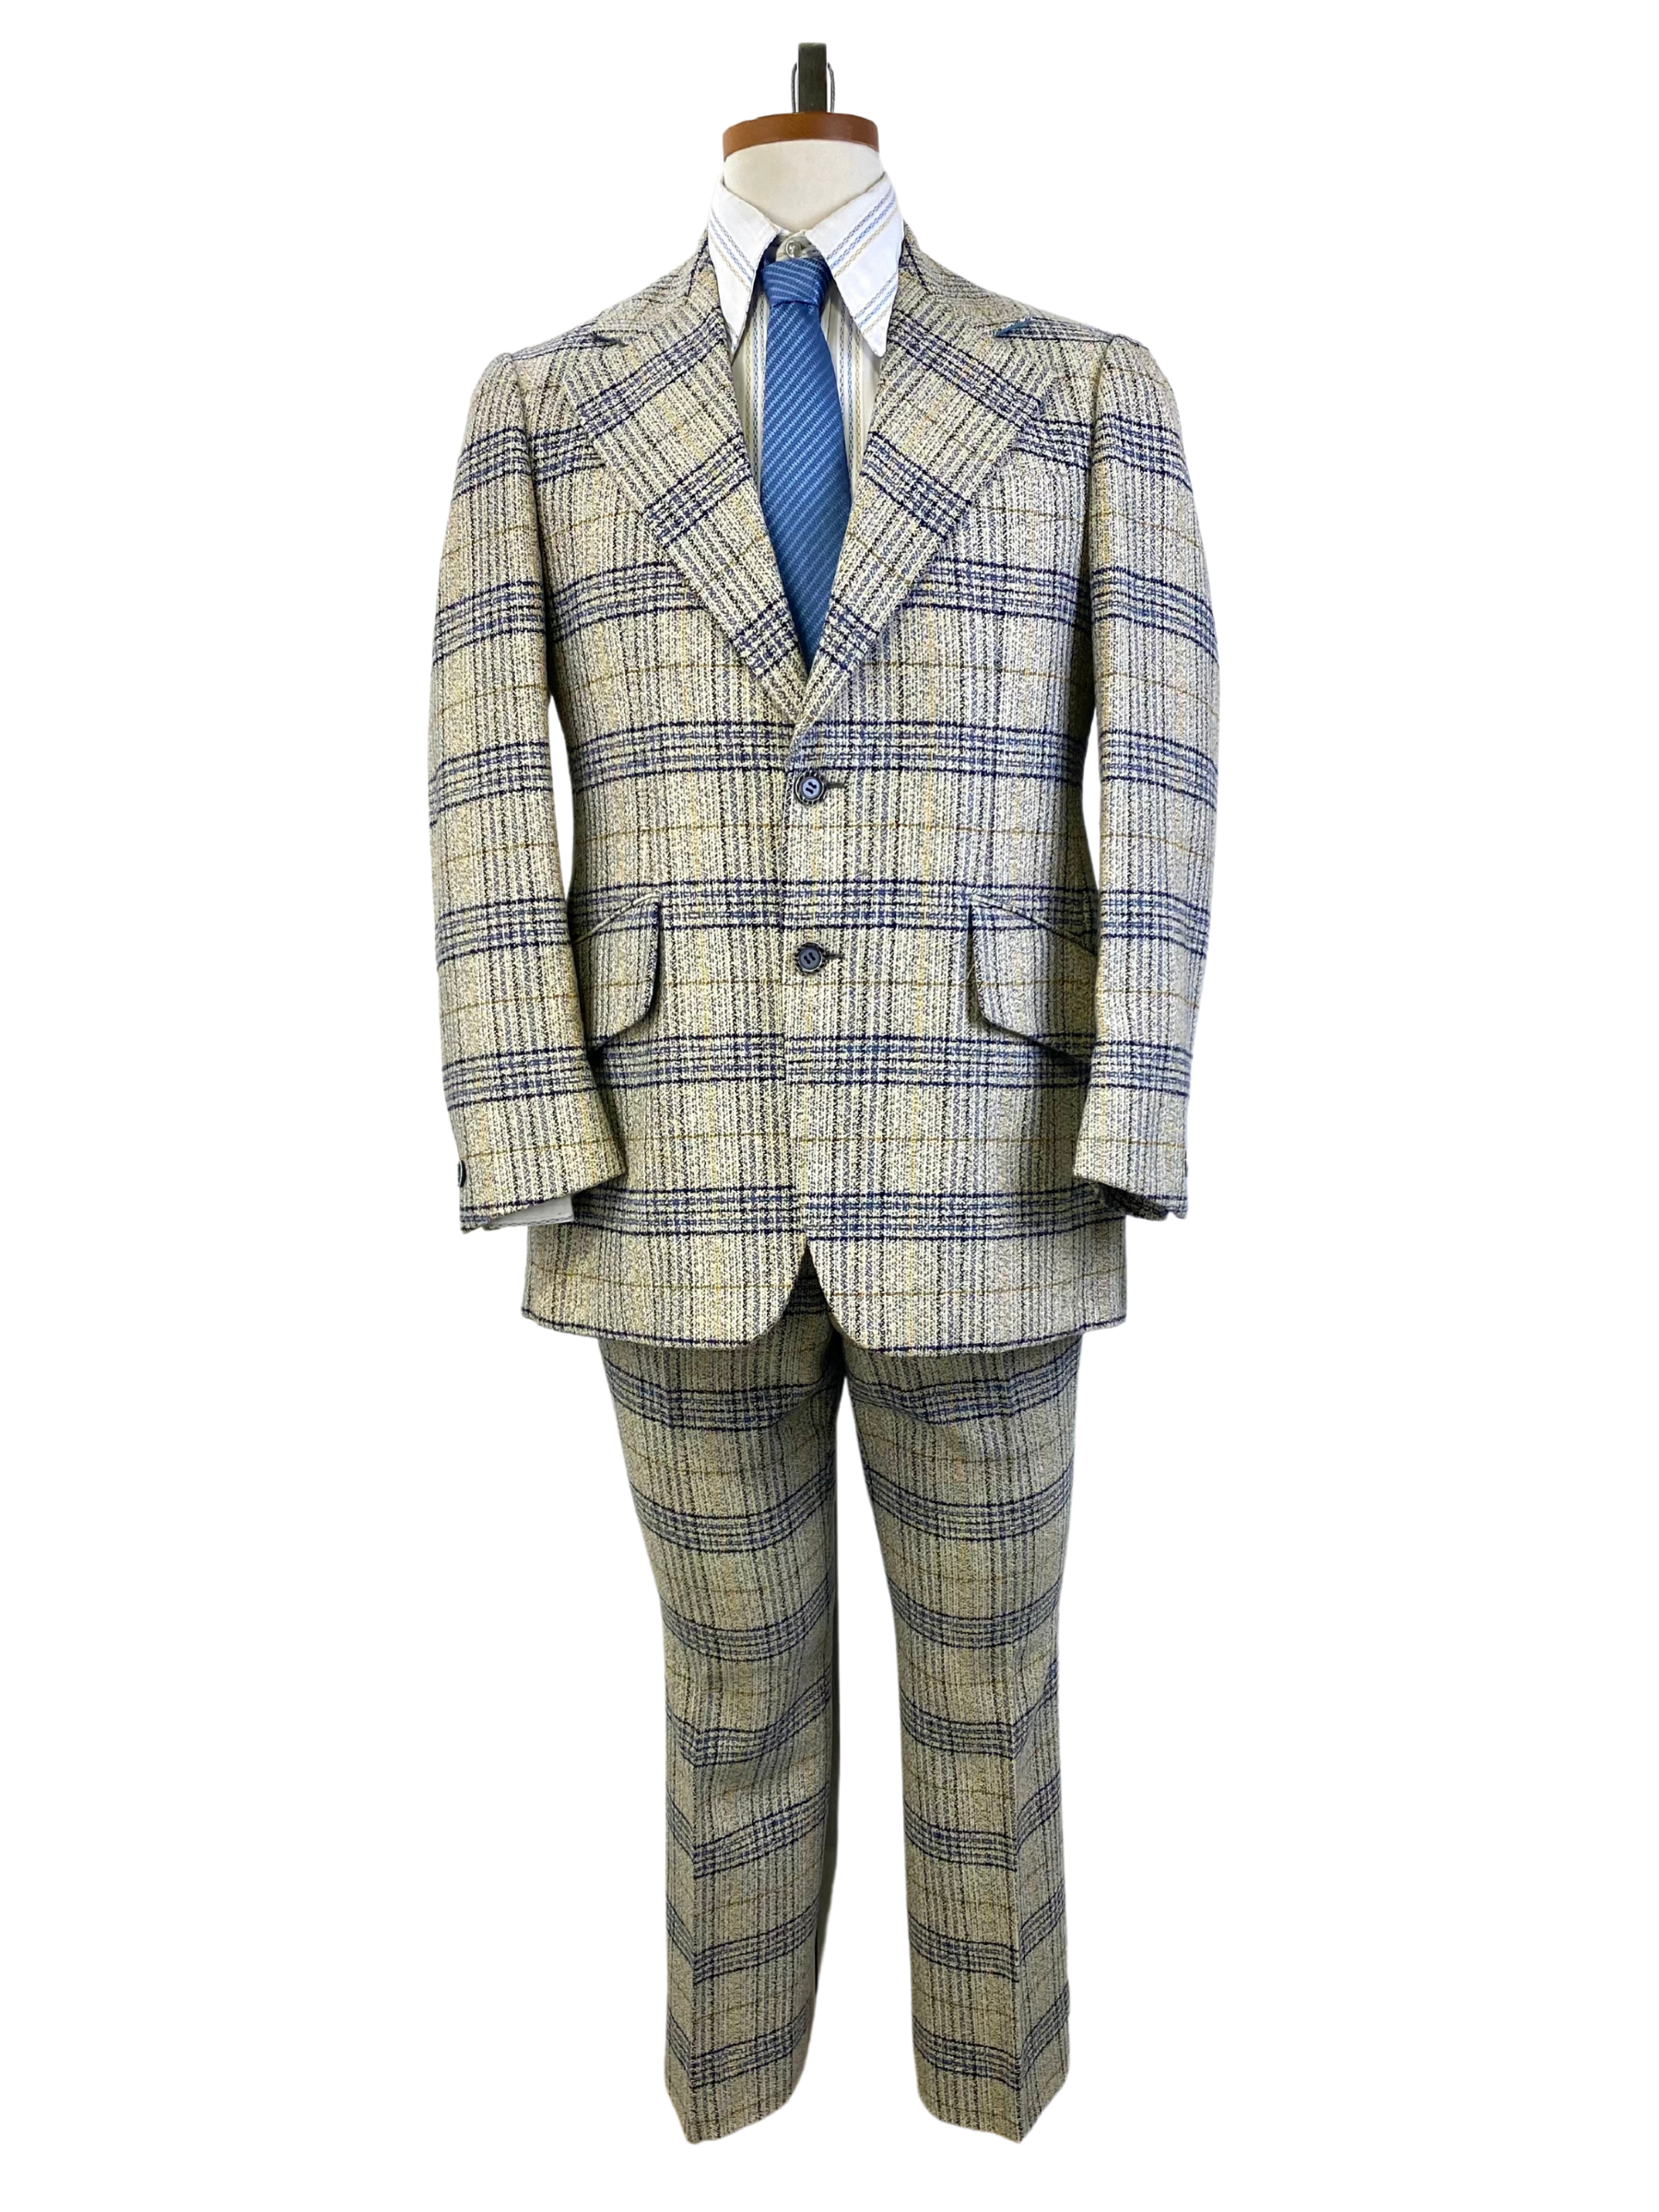 Early 1970s Vintage Men's Suit, Blue/ Gold 2-Piece Plaid Suit, Norman Holland Toronto